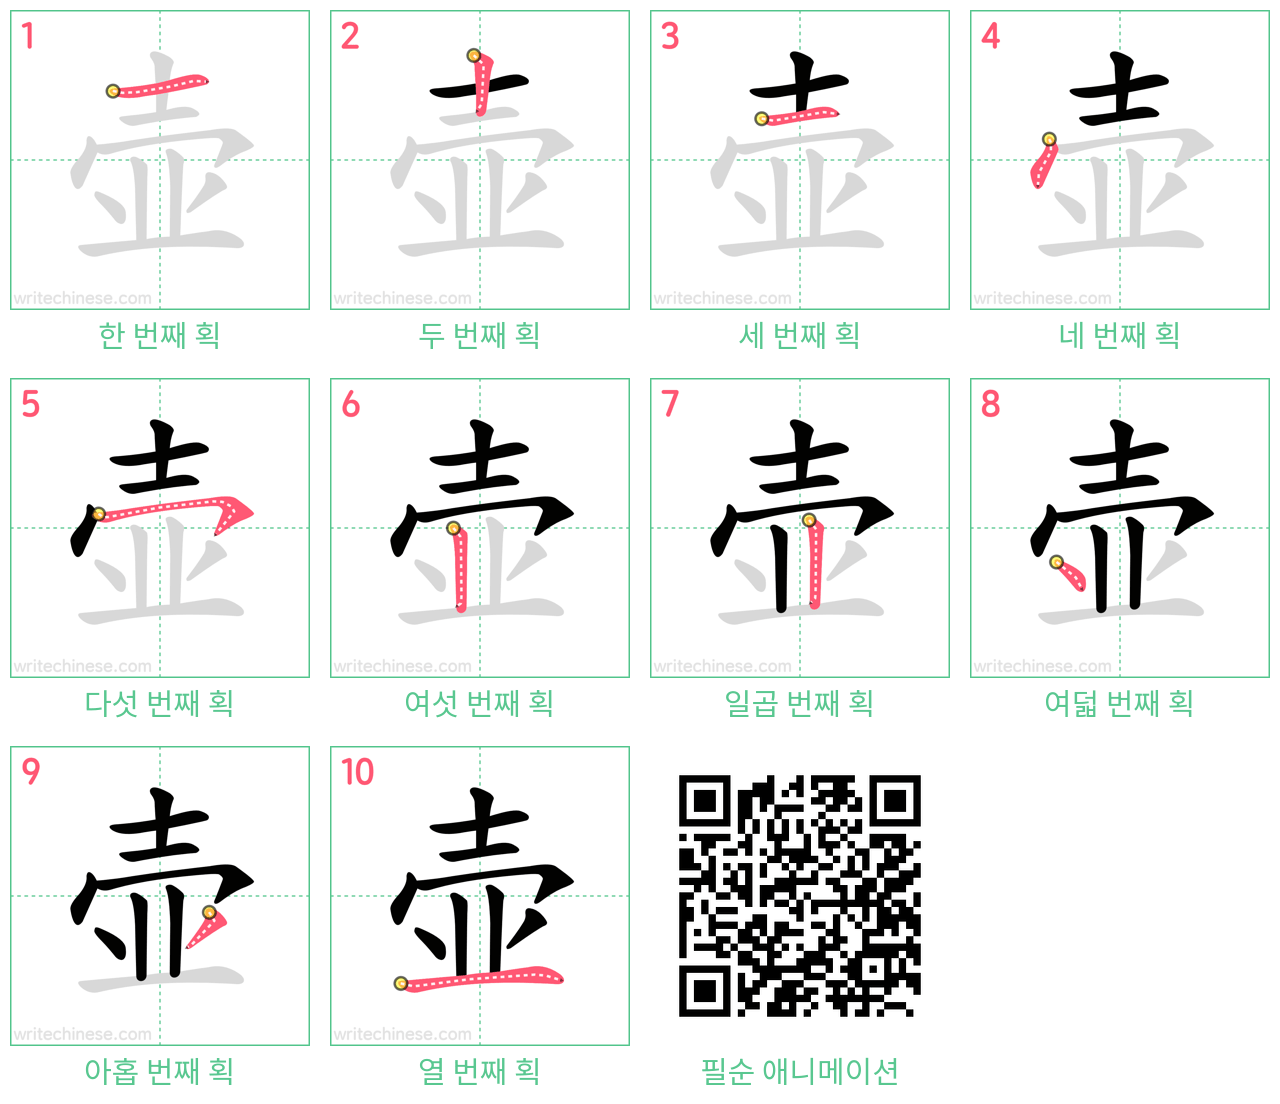 壶 step-by-step stroke order diagrams